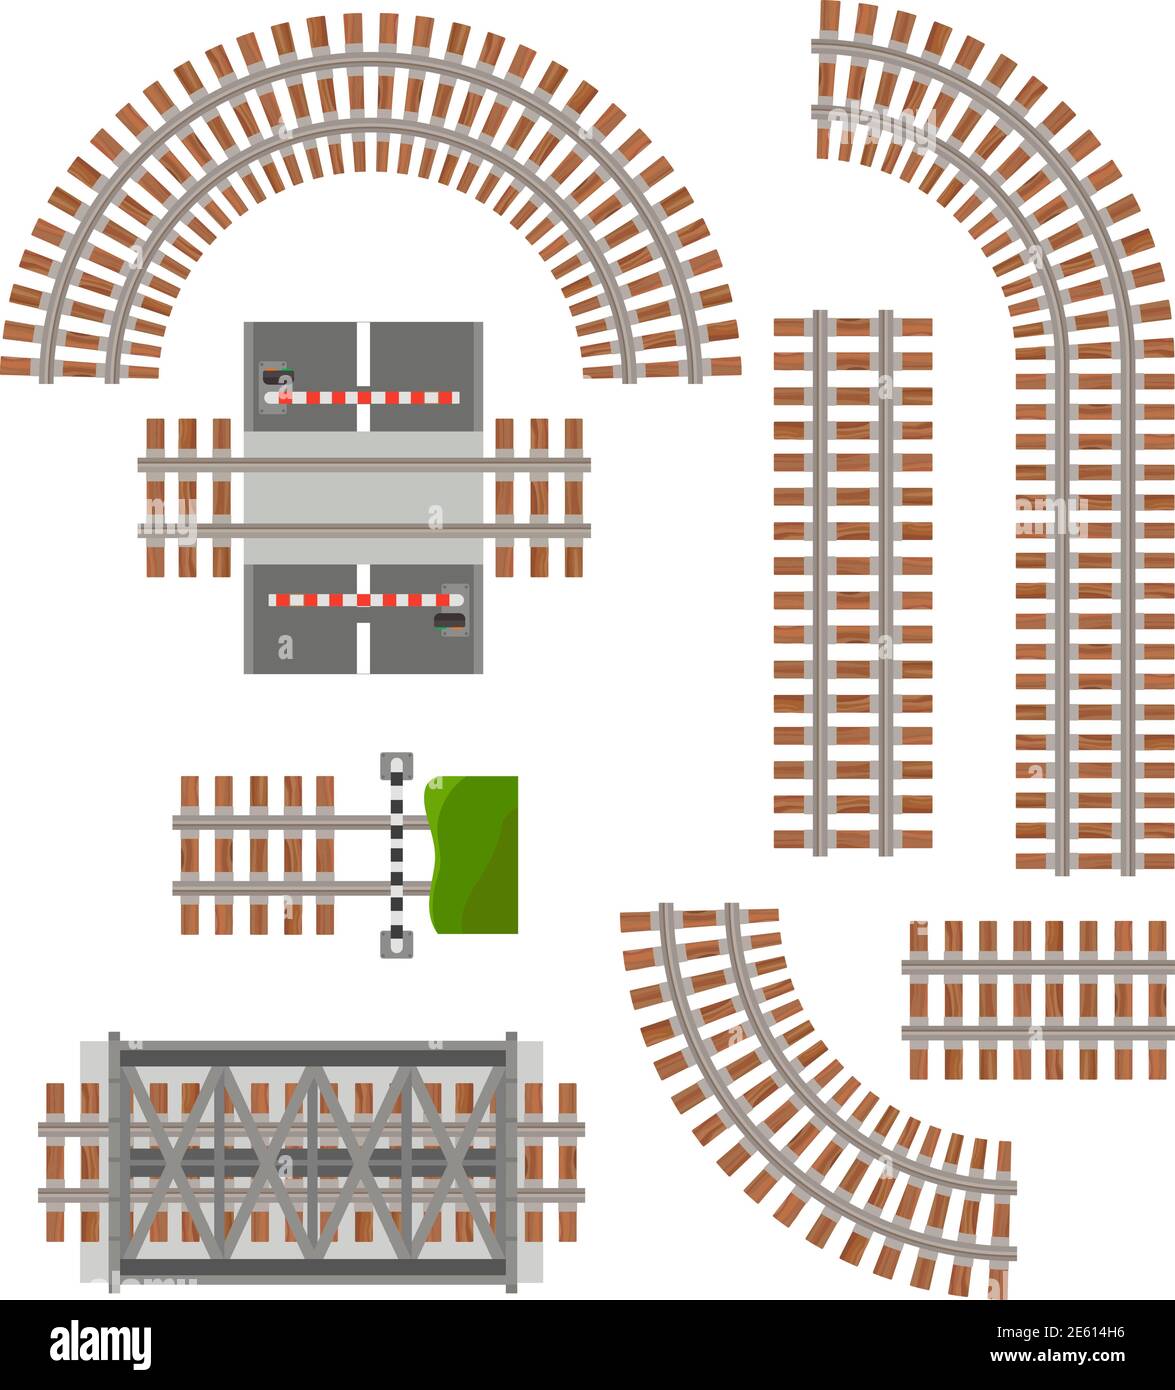 Pièces de rails de chemin de fer. Eléments de construction ferroviaire isolés sur fond blanc Illustration de Vecteur